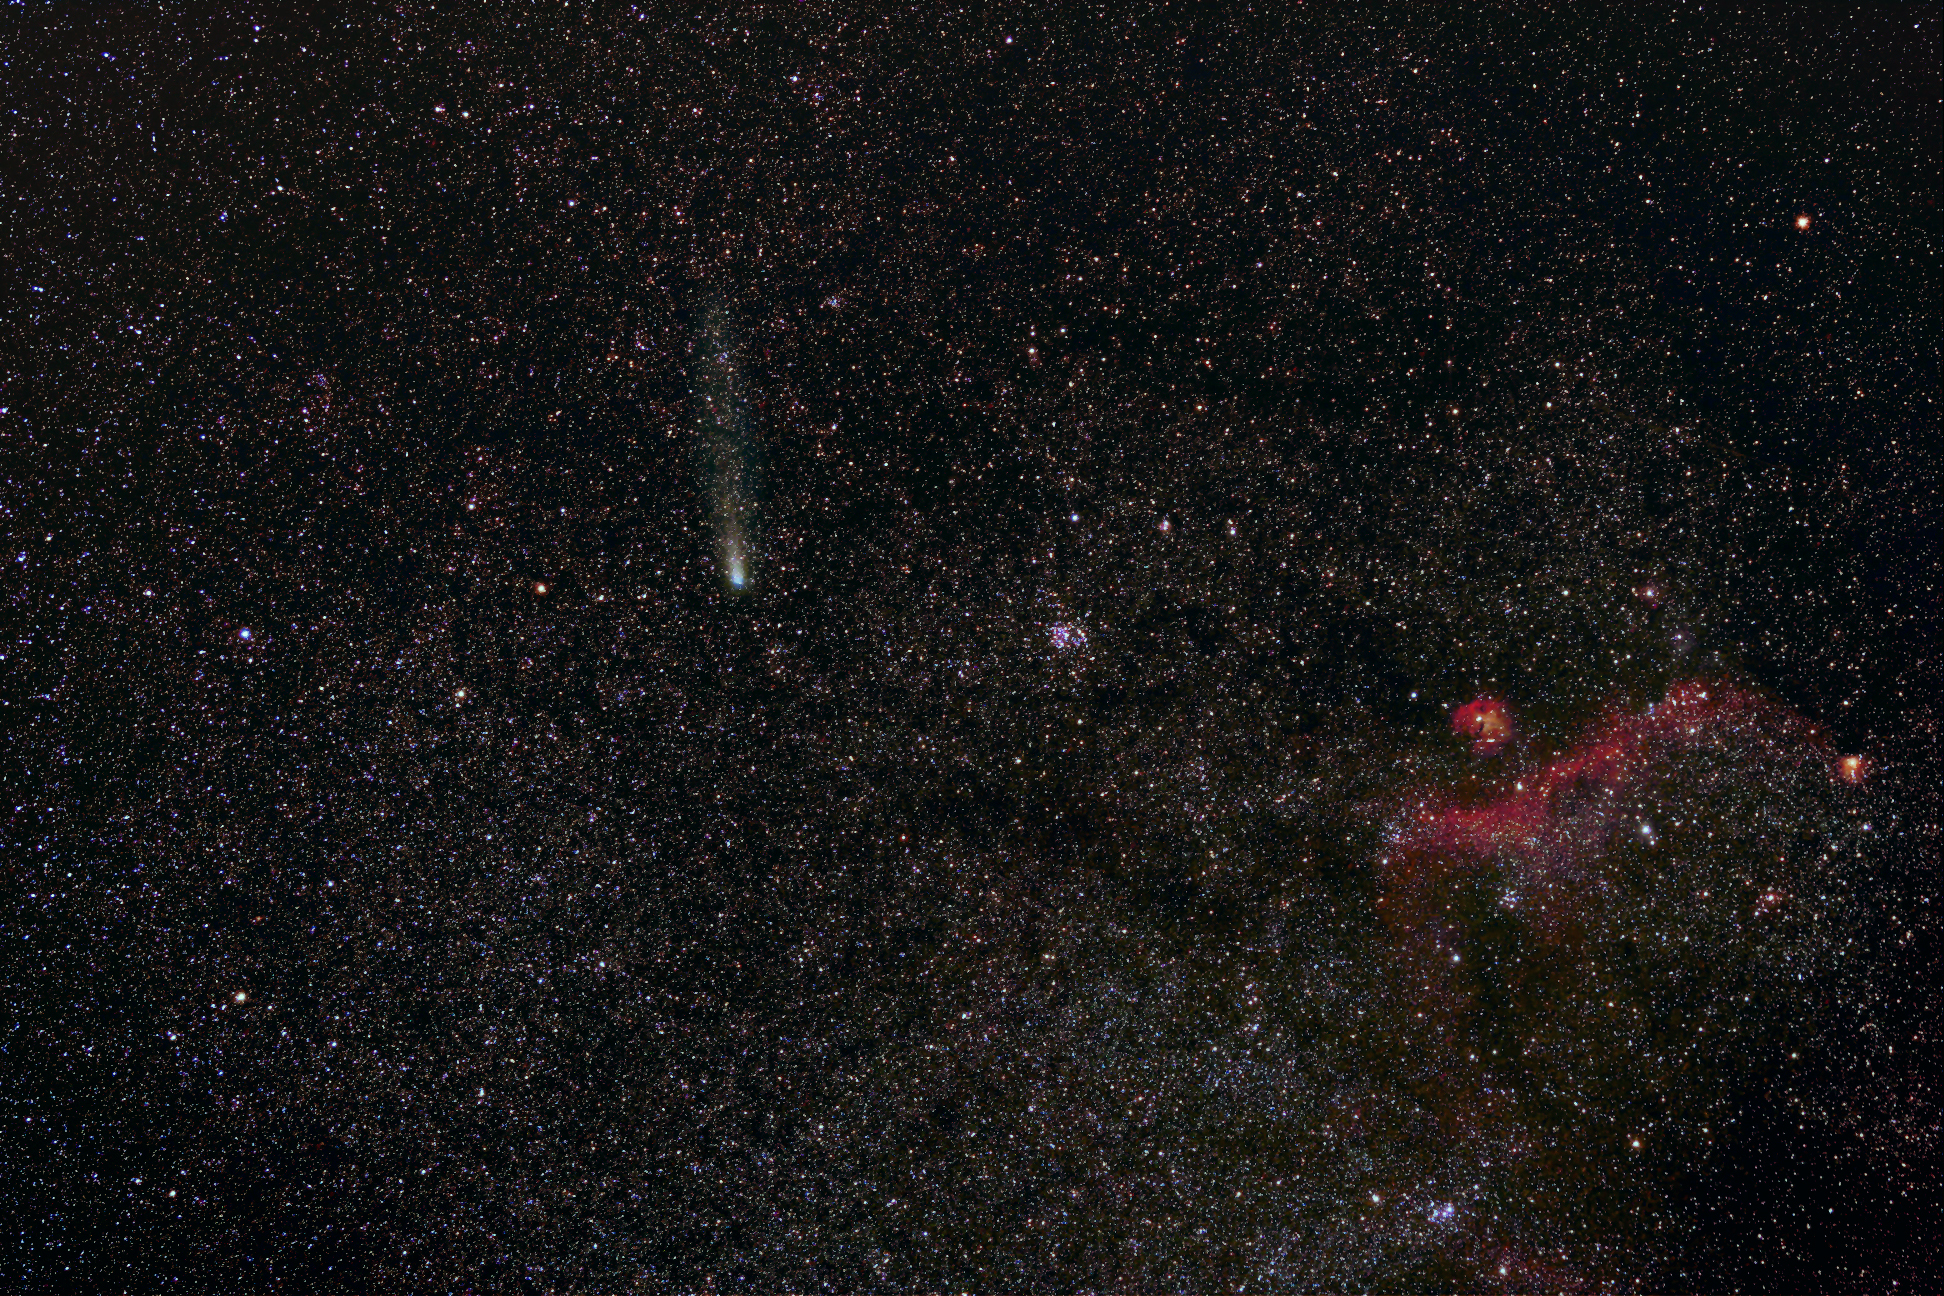 Comet 21P Giacobini-Zinner